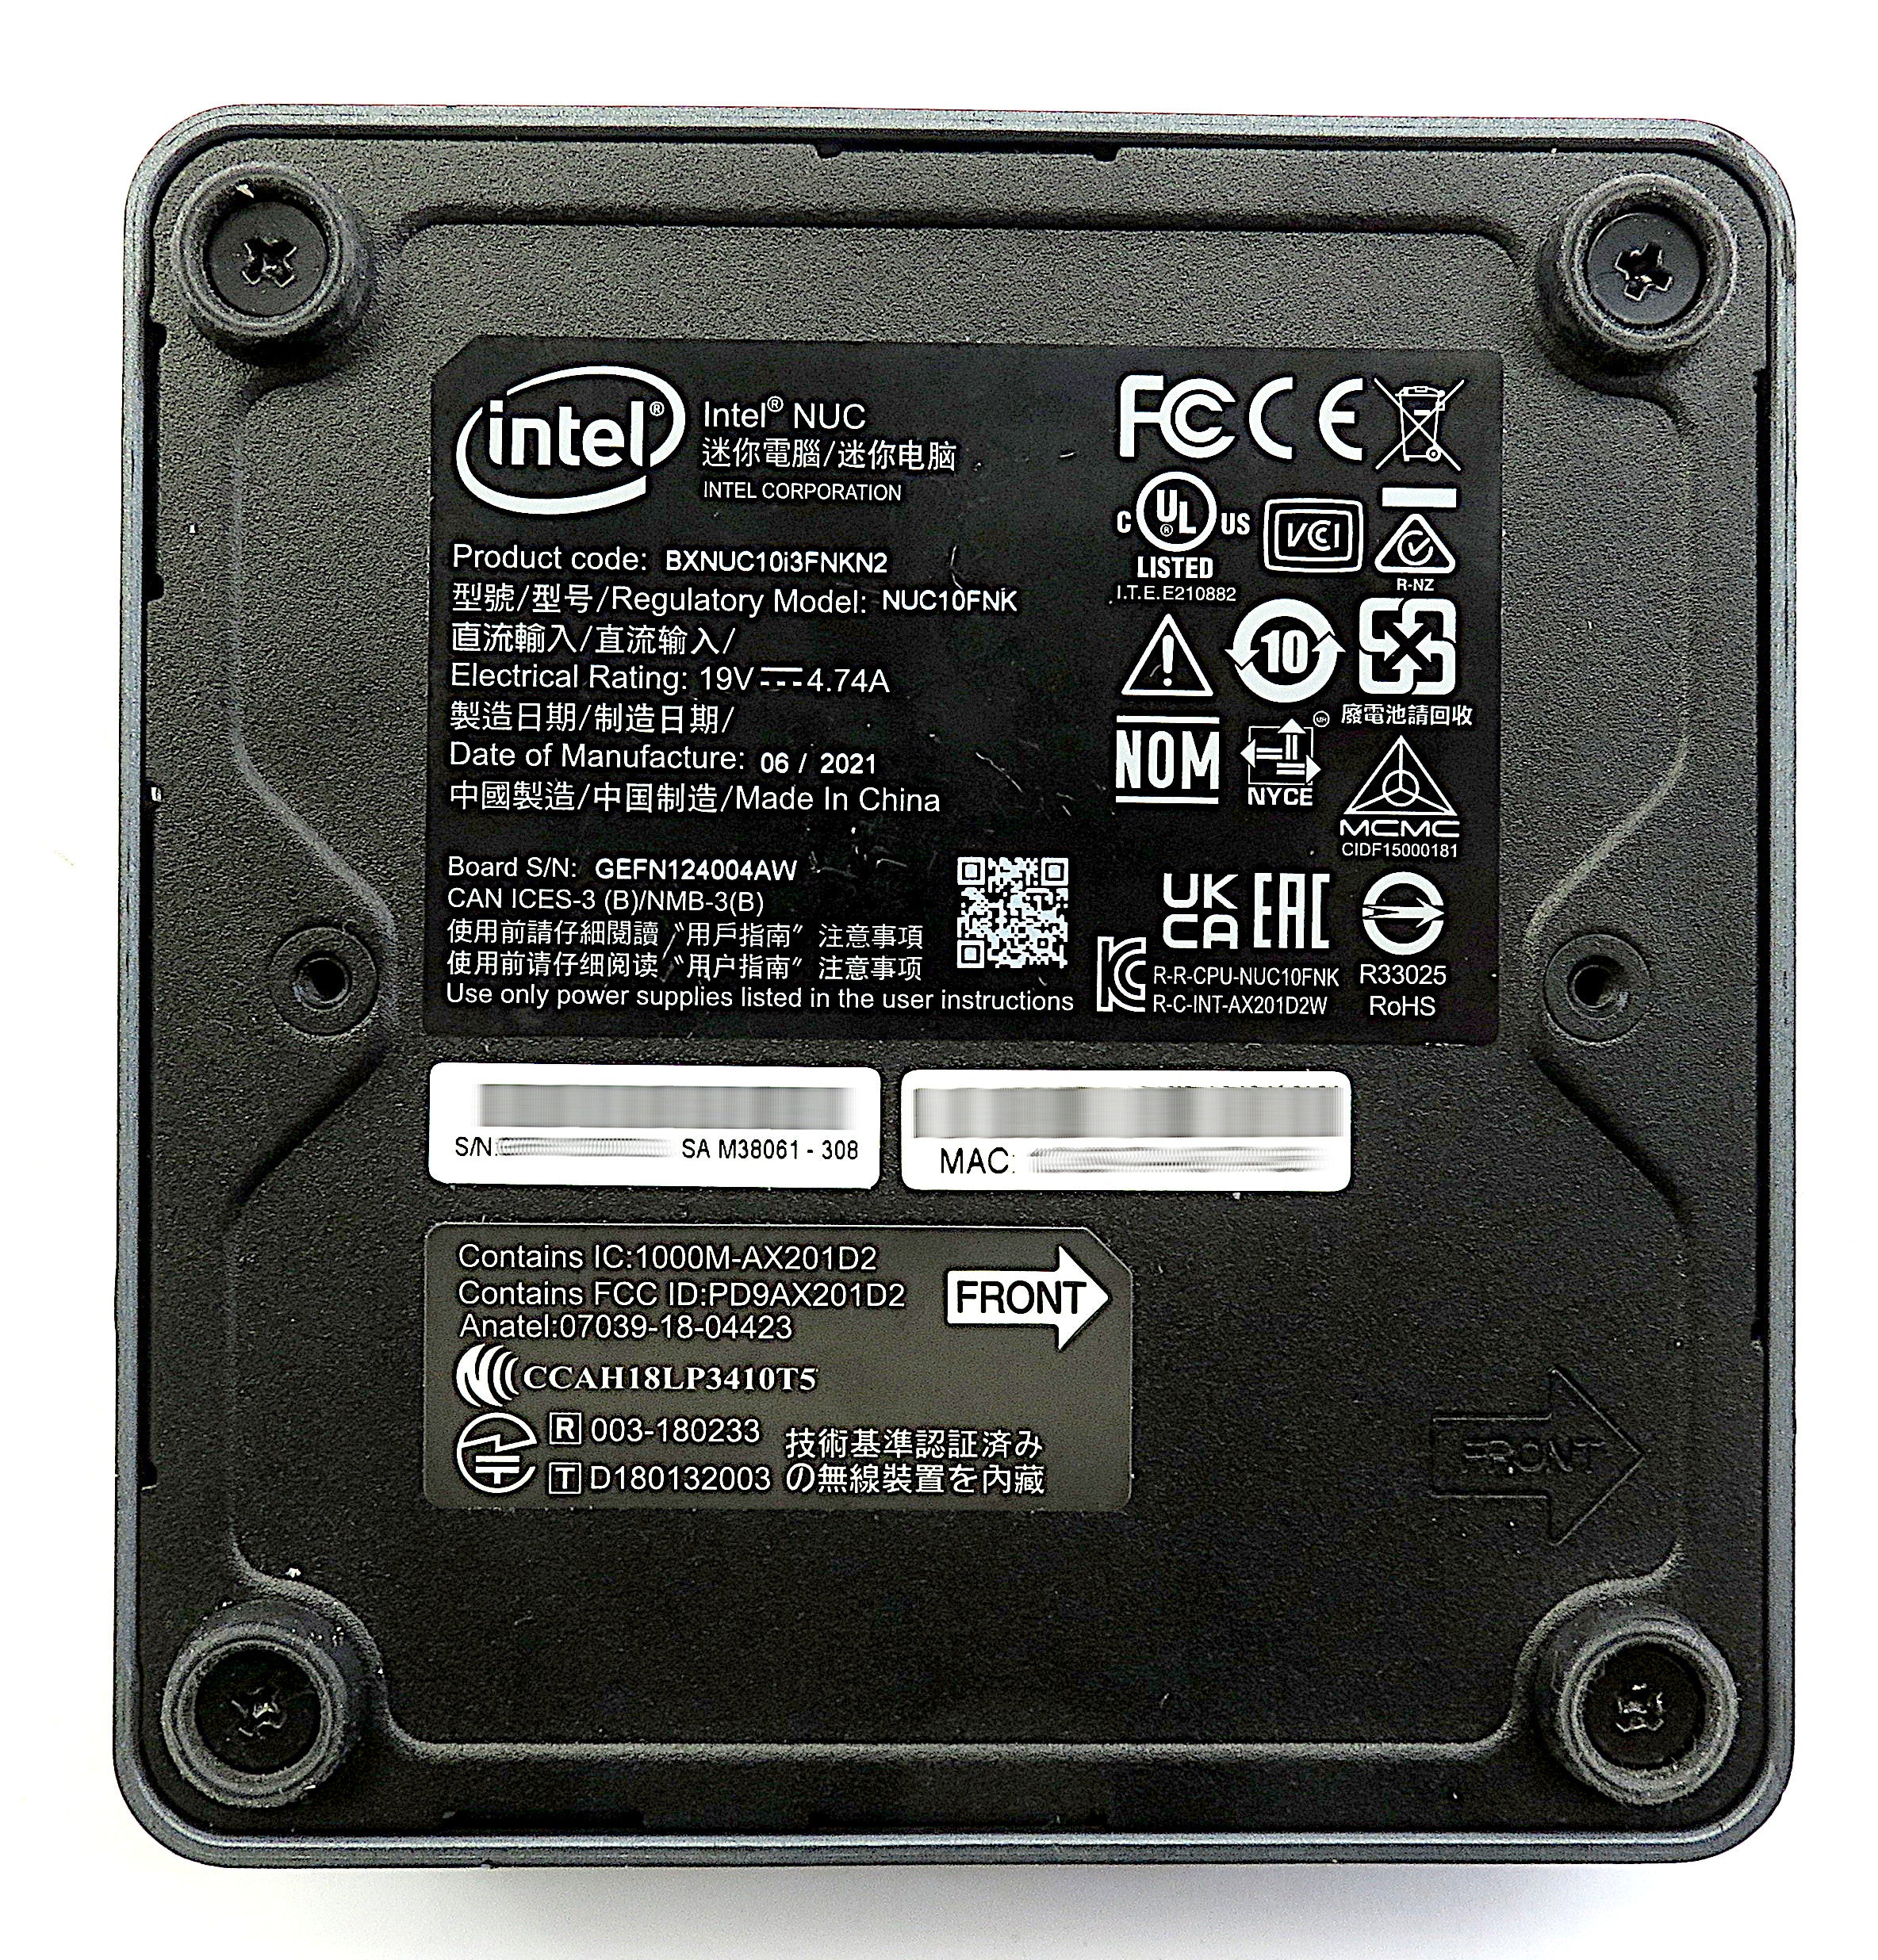 Intel NUC10i3FNKN PC, i3-10110U CPU, 16GB RAM, 256GB SSD